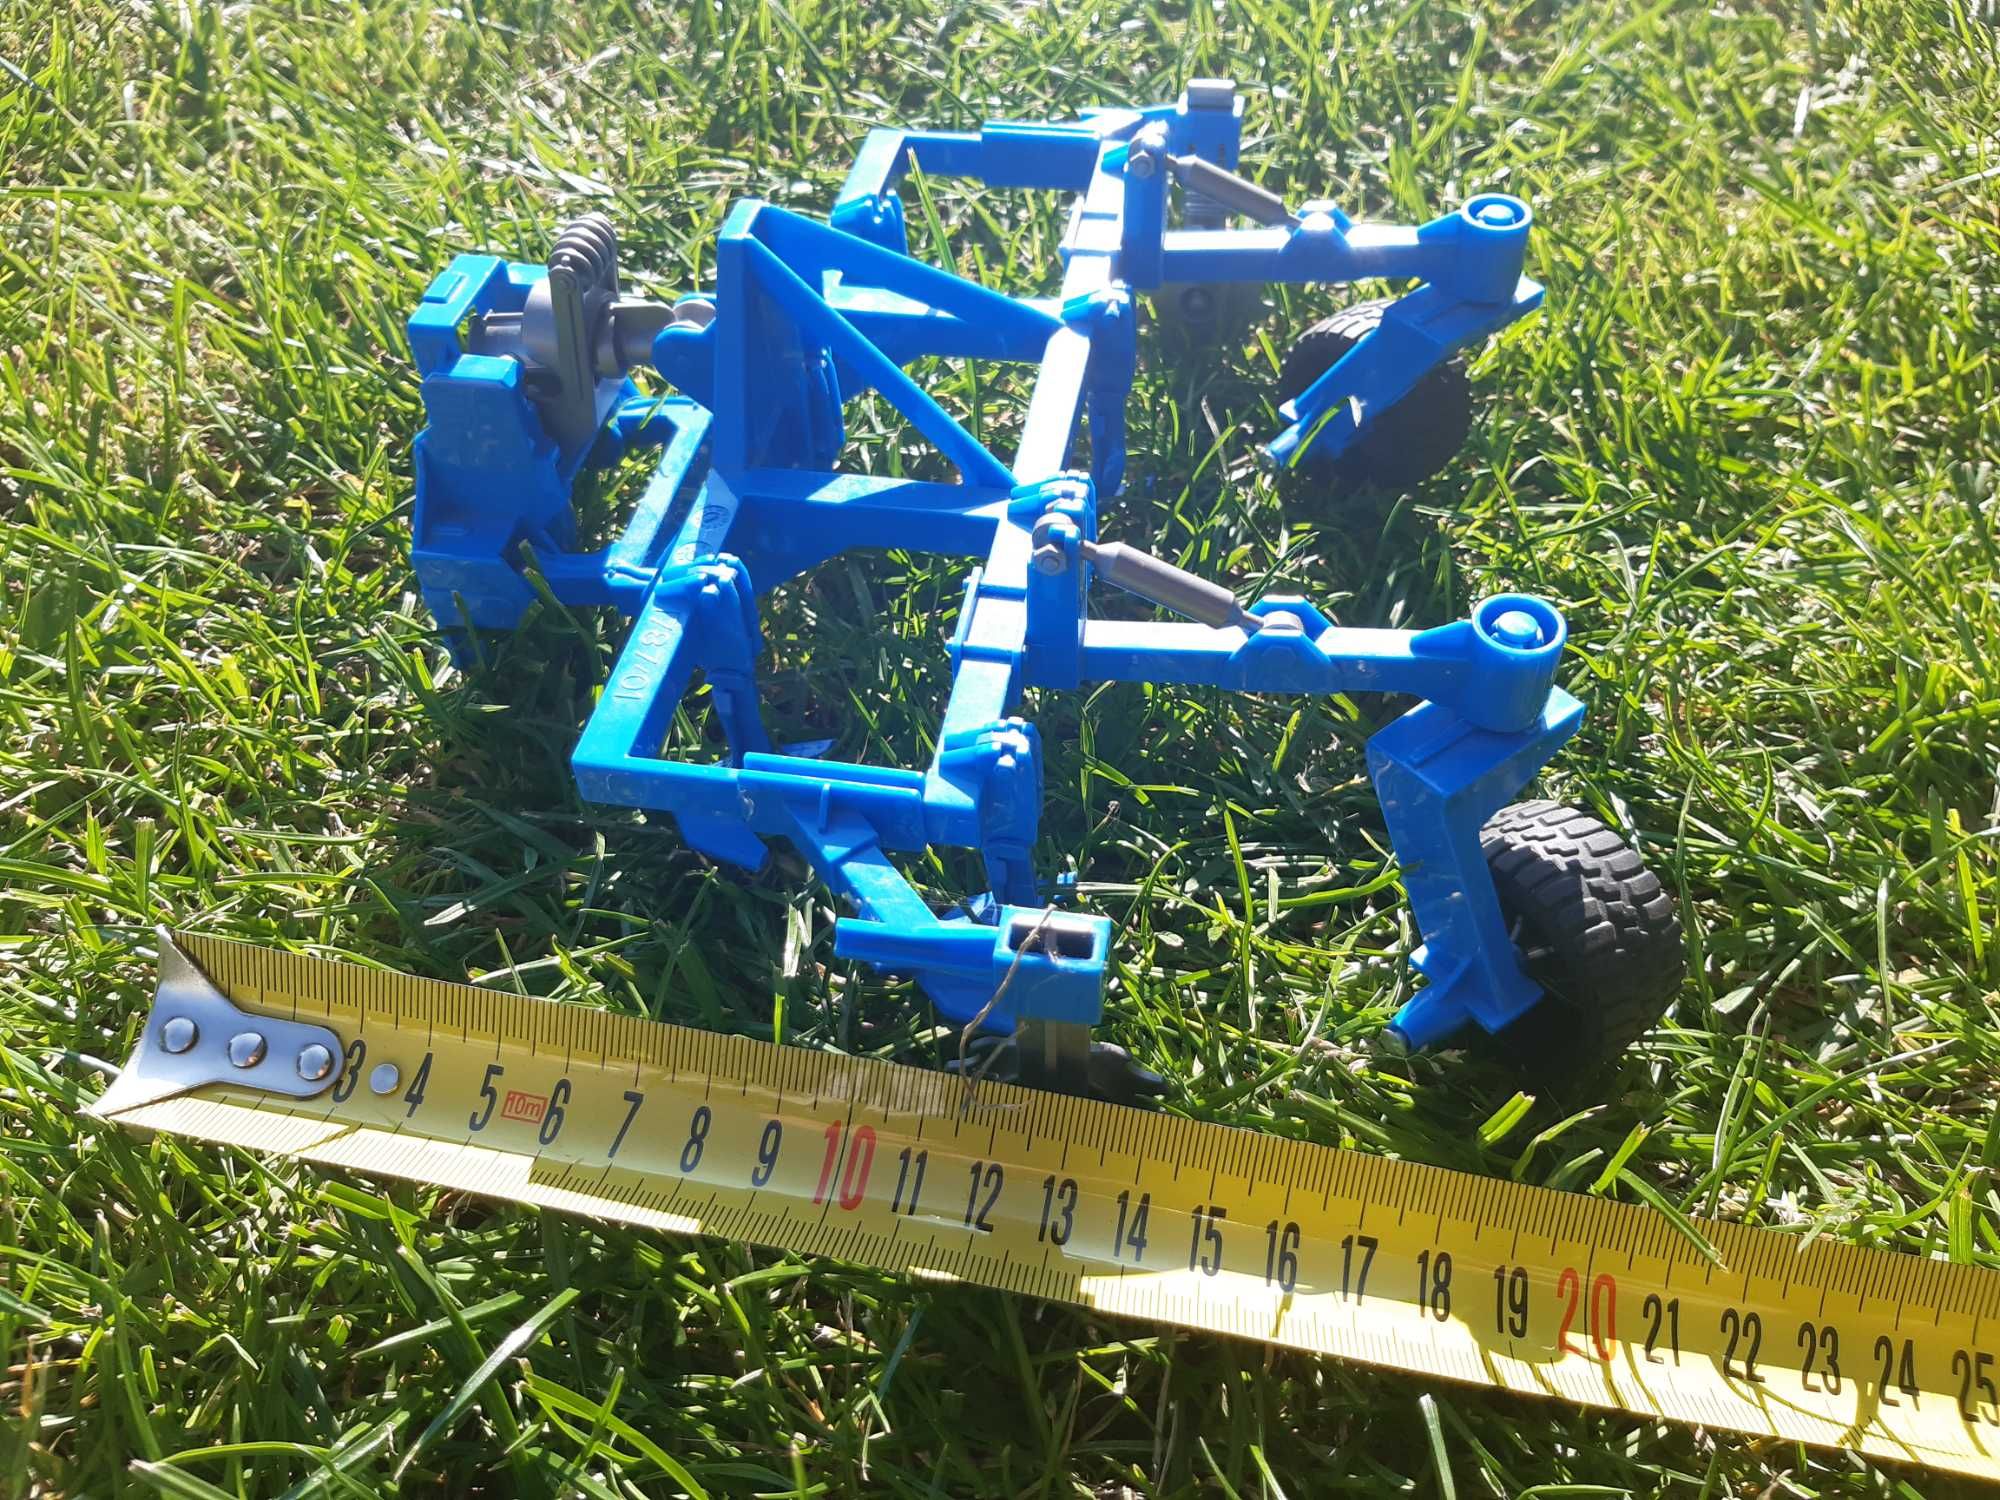 pług zabawkowy do traktorów duży 23cm, niebieski, stan bardzo dobry